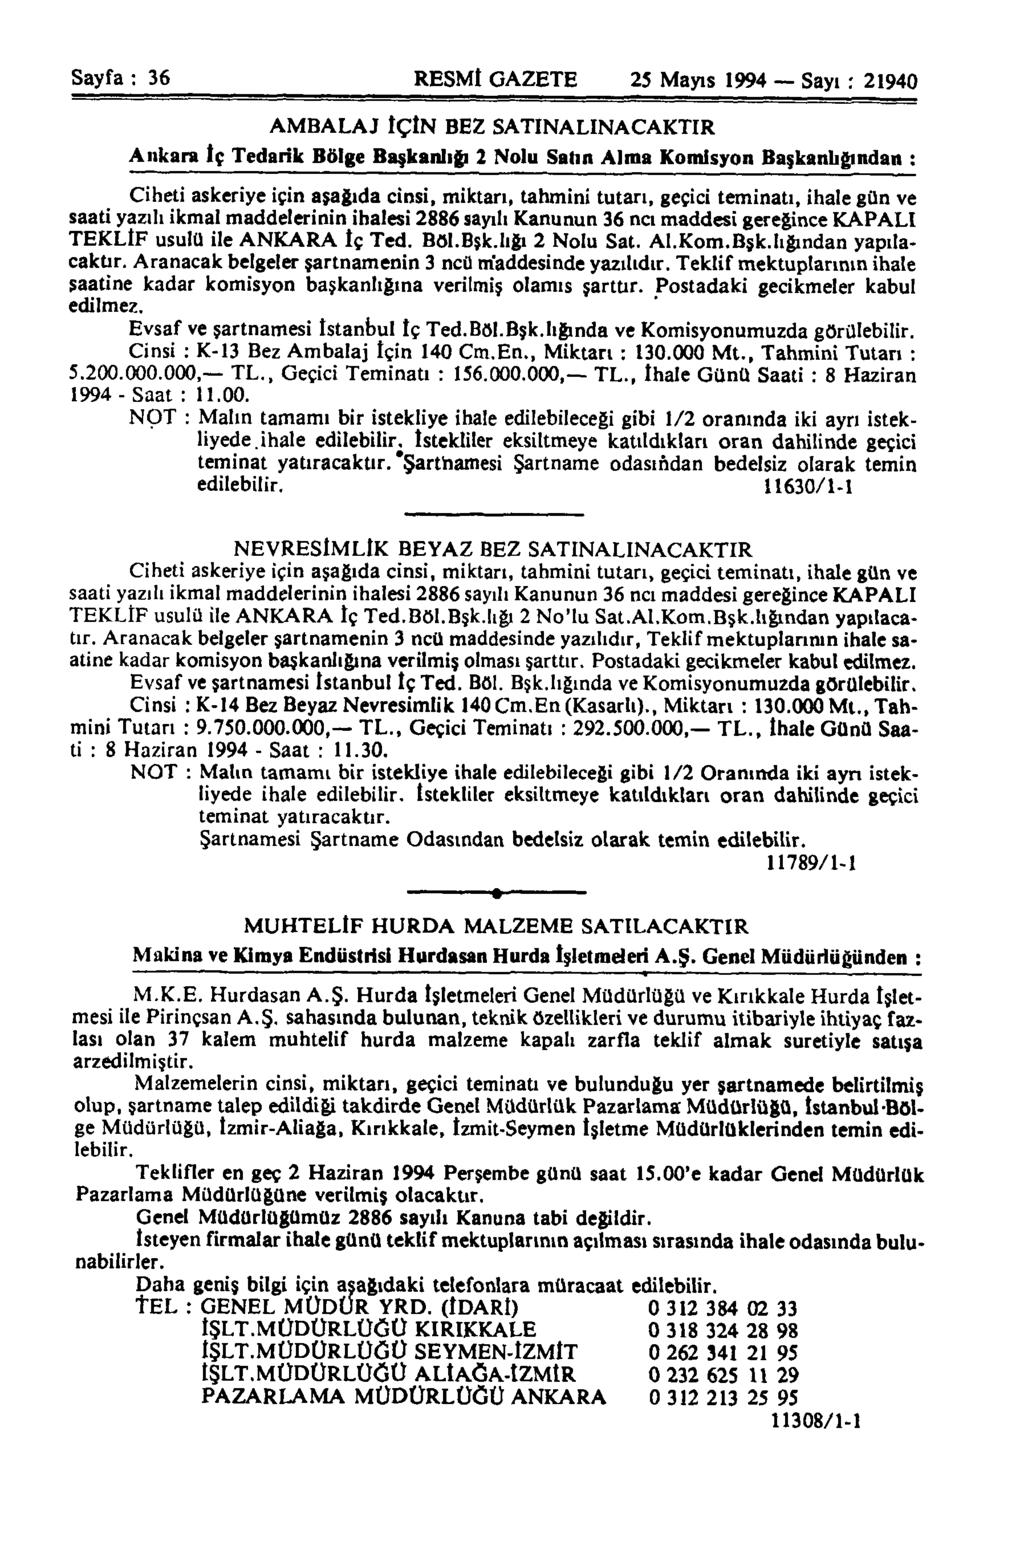 Sayfa : 36 RESMİ GAZETE 25 Mayıs 1994 Sayı : 21940 AMBALAJ İÇİN BEZ SATINALINAÇAKTIR Ankara İç Tedarik Bölge Başkanlığı 2 Nolu Salın Alma Komisyon Başkanlığından : Ciheti askeriye için aşağıda cinsi,